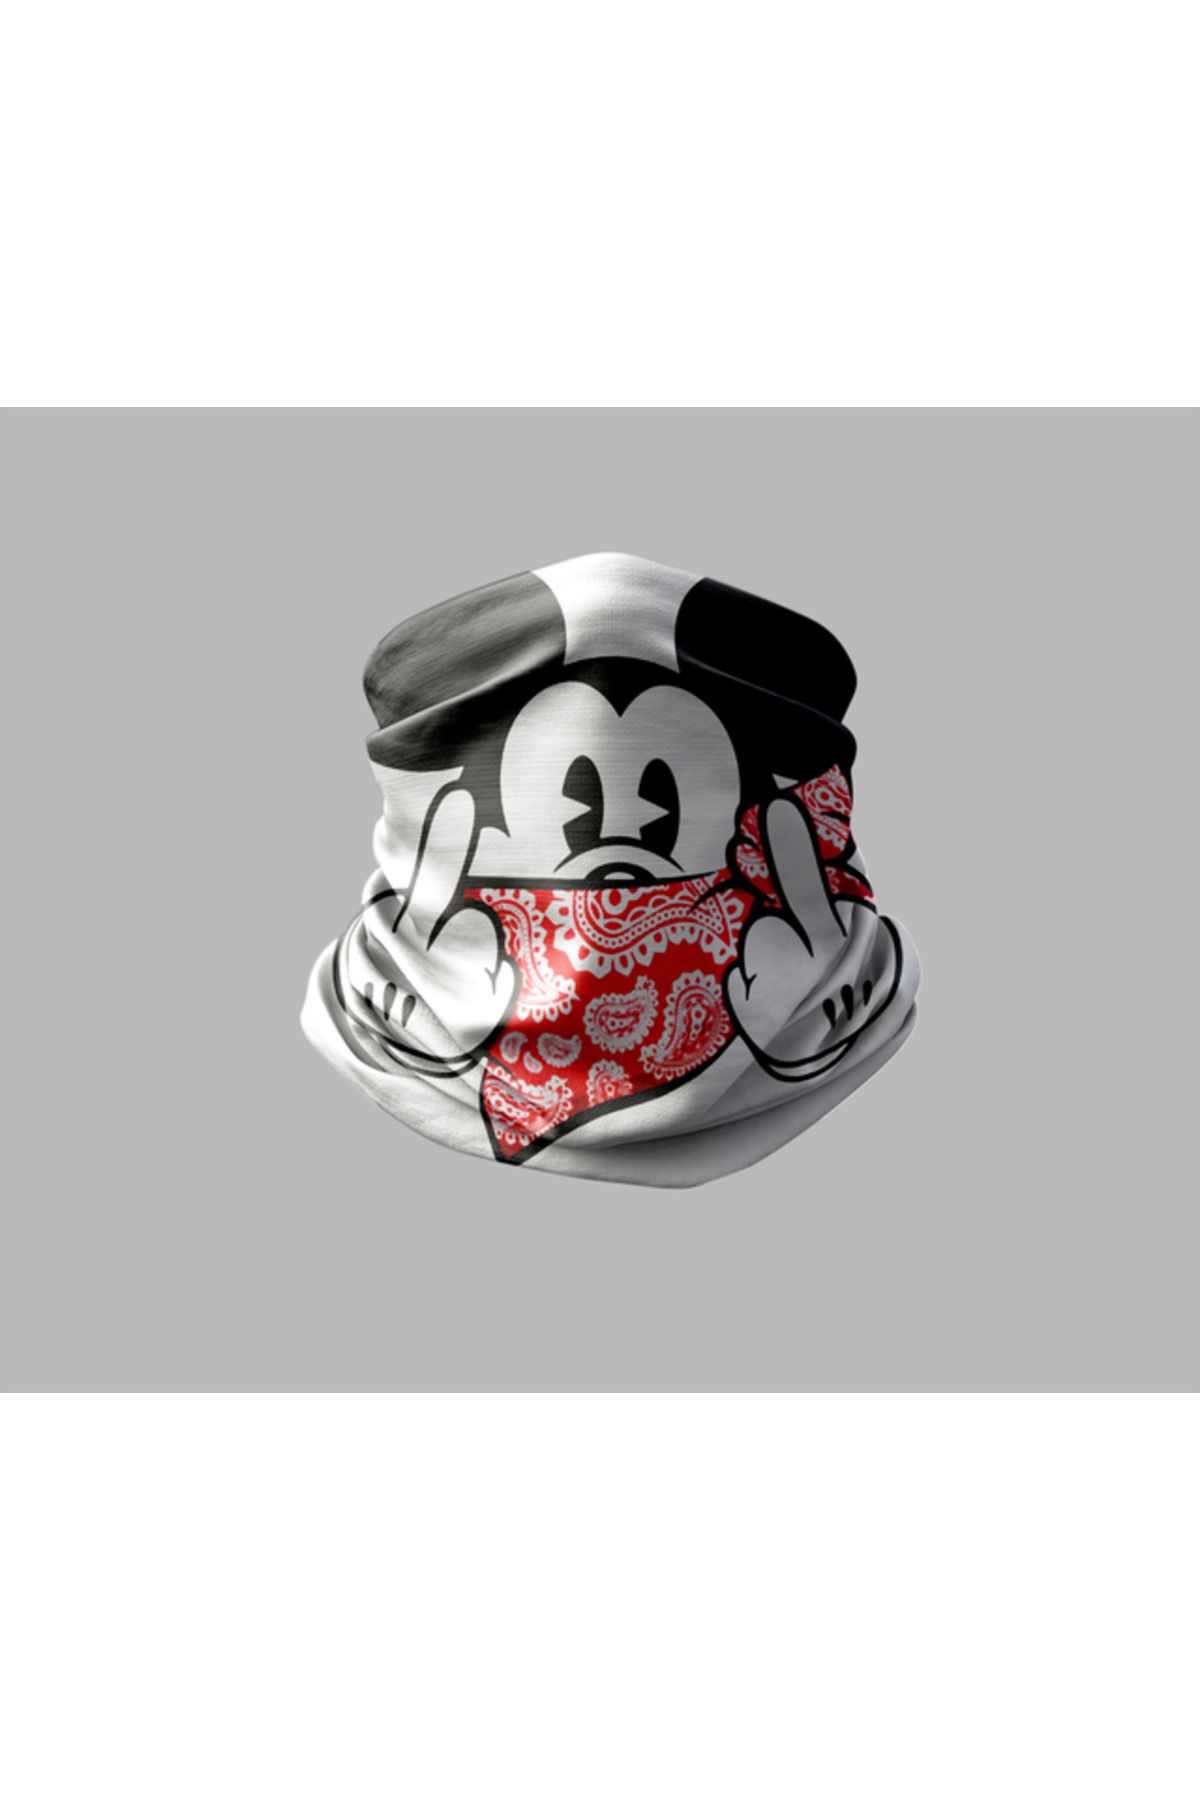 Buffalo Mickey Mouse Tasarımlı Motorcu Buff Maske Outdoor Boyunluk Unisex Bandana